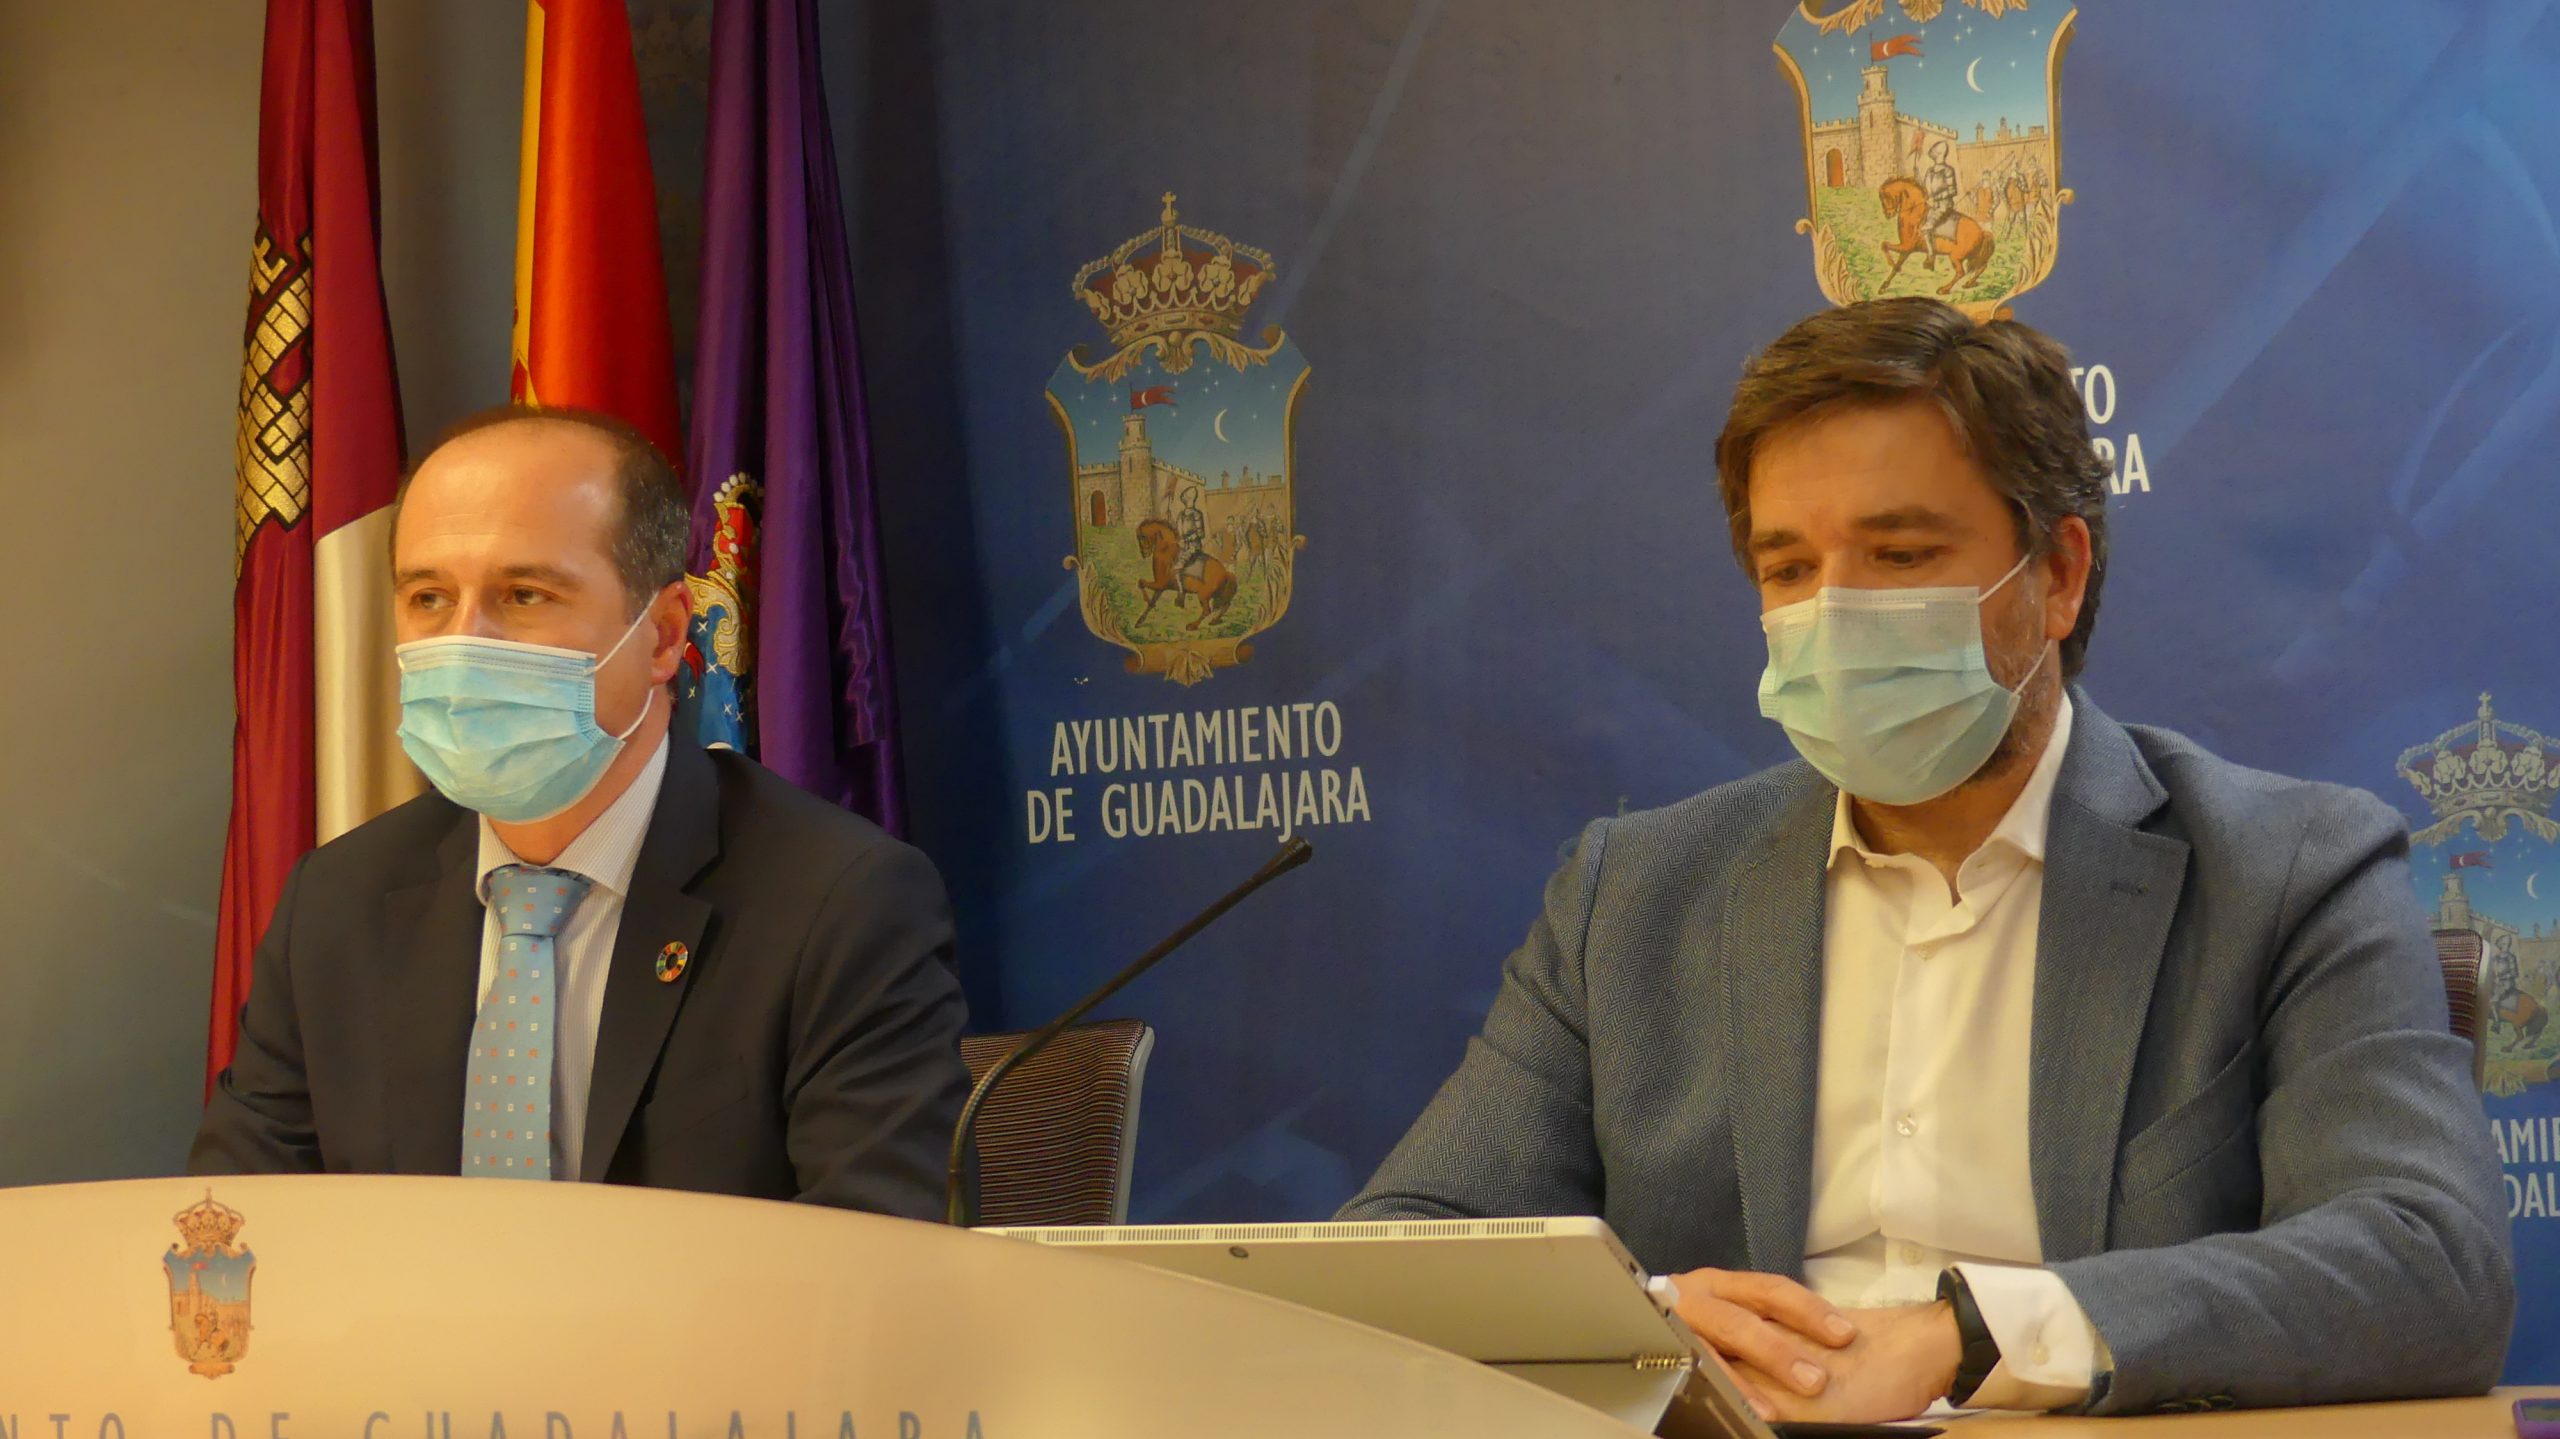 Alberto Rojo y Rafael pérez Borda en su rueda de prensa del 8 de febrero de 2021 en el Ayuntamiento de Guadalajara. (Foto: La Crónic@)